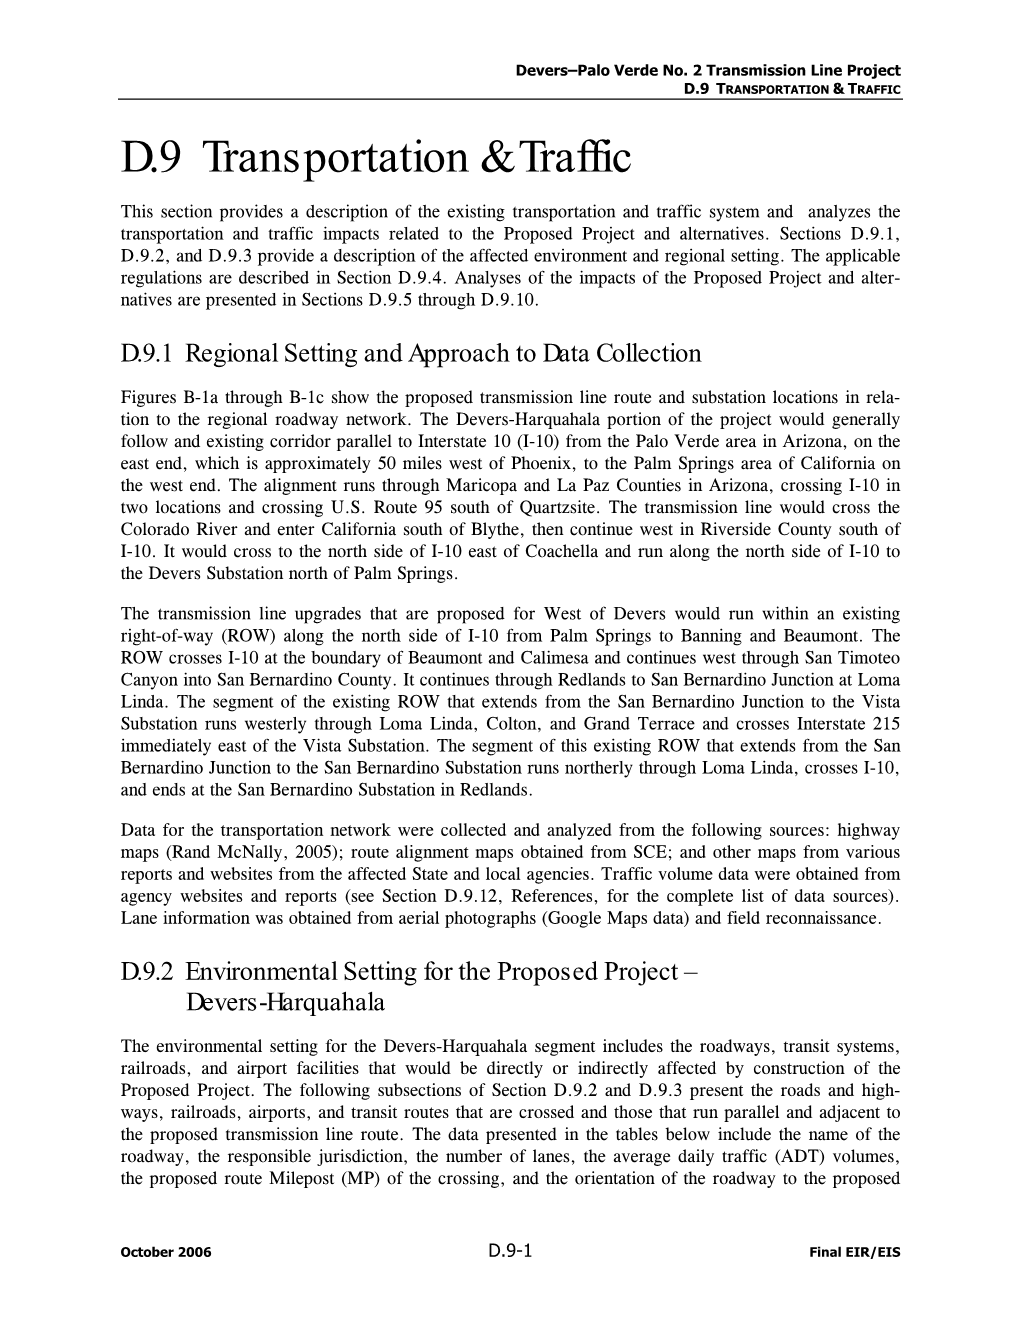 D.9 Transportation & Traffic